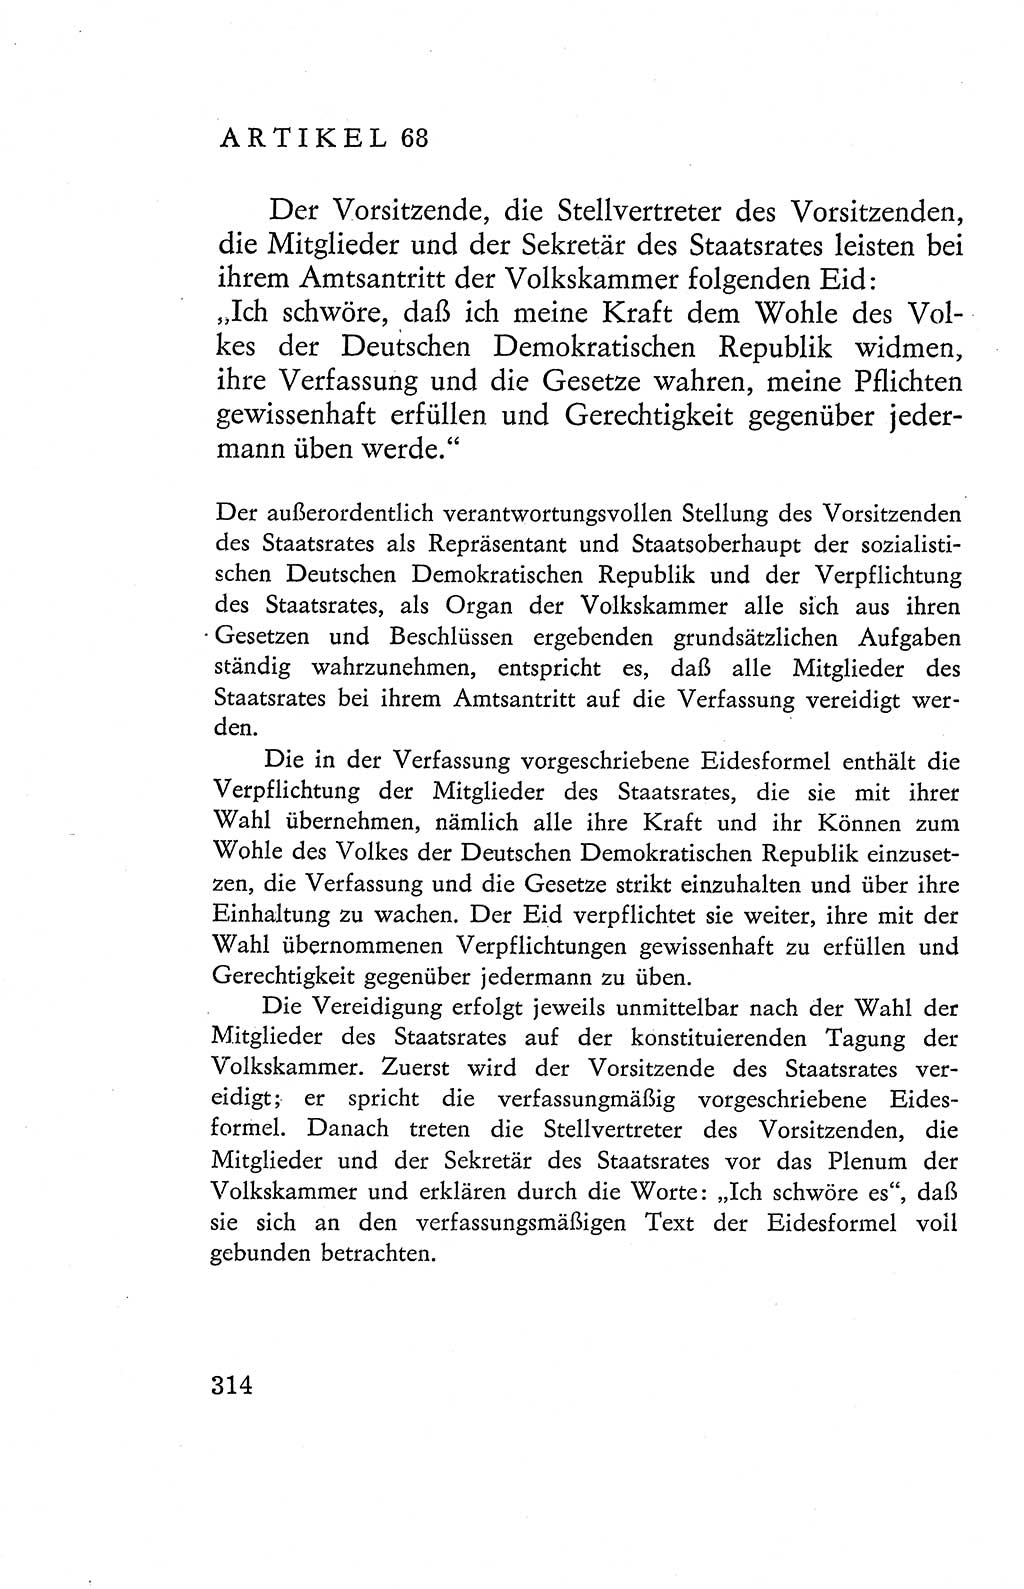 Verfassung der Deutschen Demokratischen Republik (DDR), Dokumente, Kommentar 1969, Band 2, Seite 314 (Verf. DDR Dok. Komm. 1969, Bd. 2, S. 314)